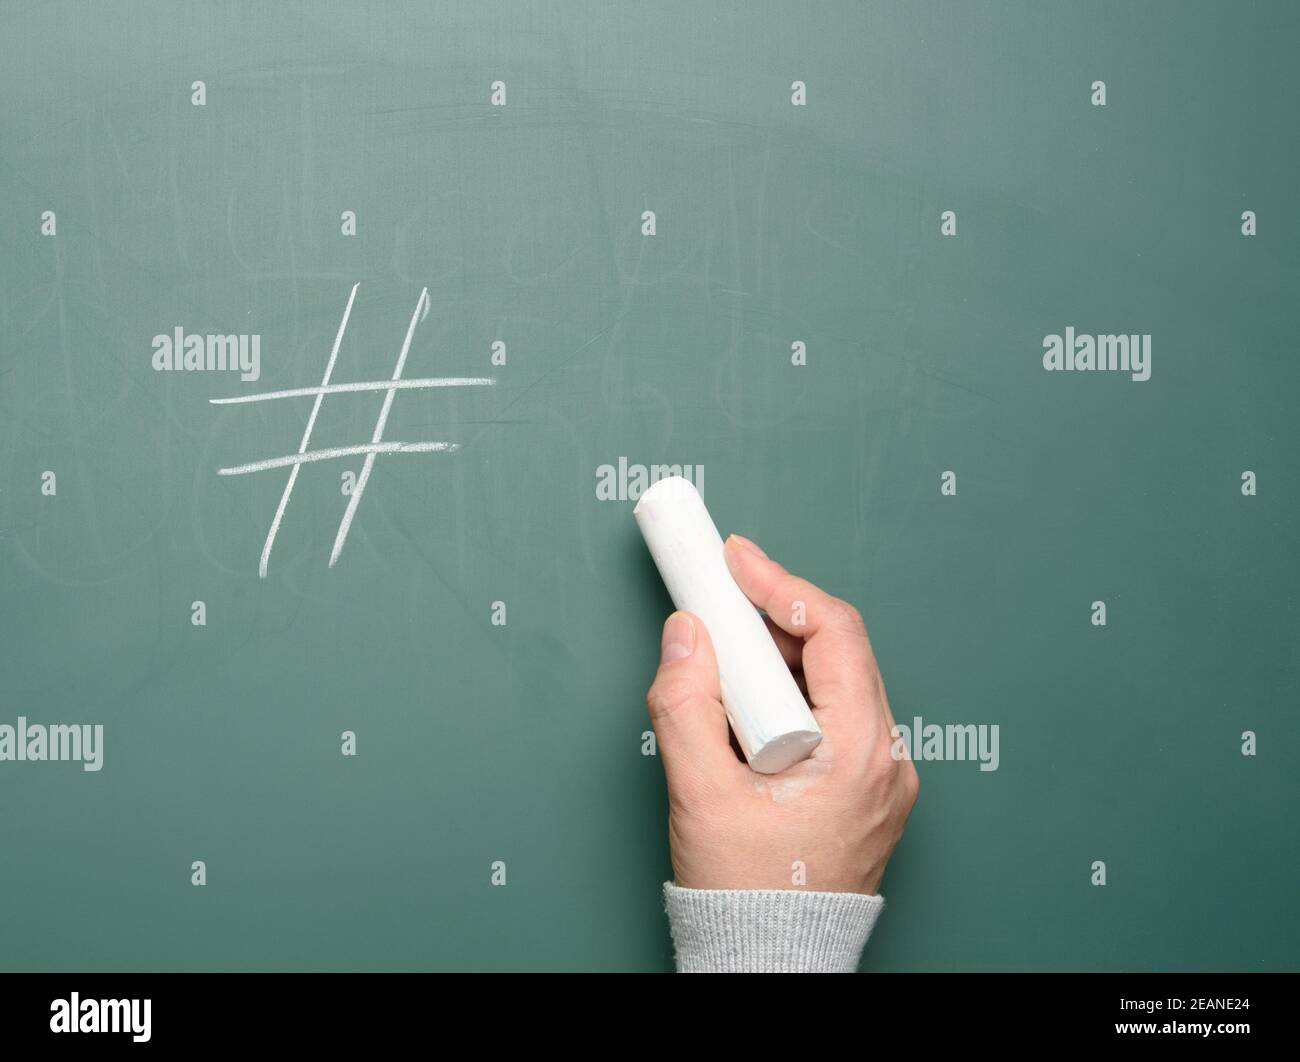 symbole de hashtag femelle dessiné à la main dans la craie blanche sur le vert tableau de craie Banque D'Images